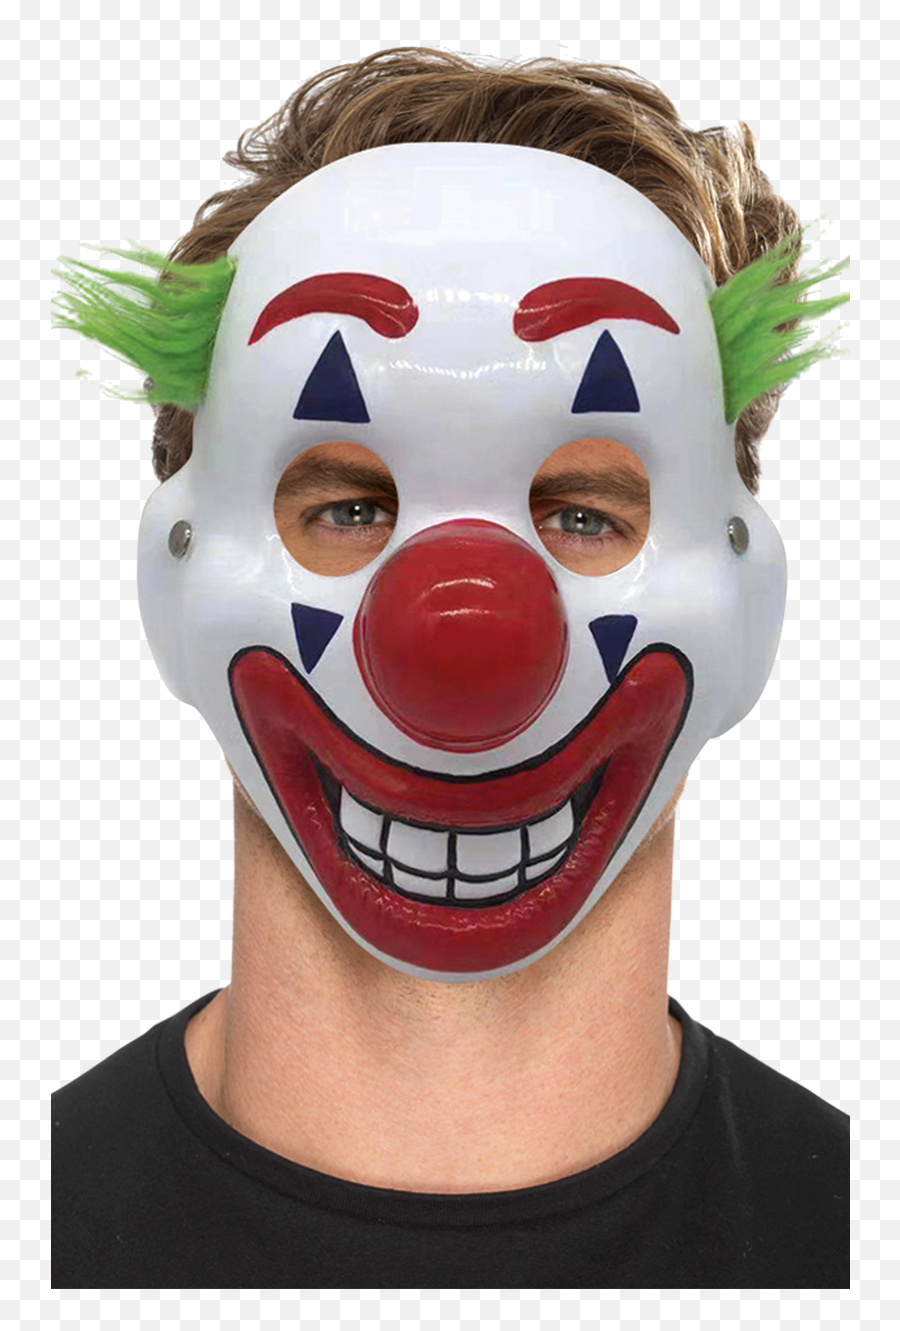 The Joker Clown Facepiece - Joker Mask From Movie Png,Joker Mask Png